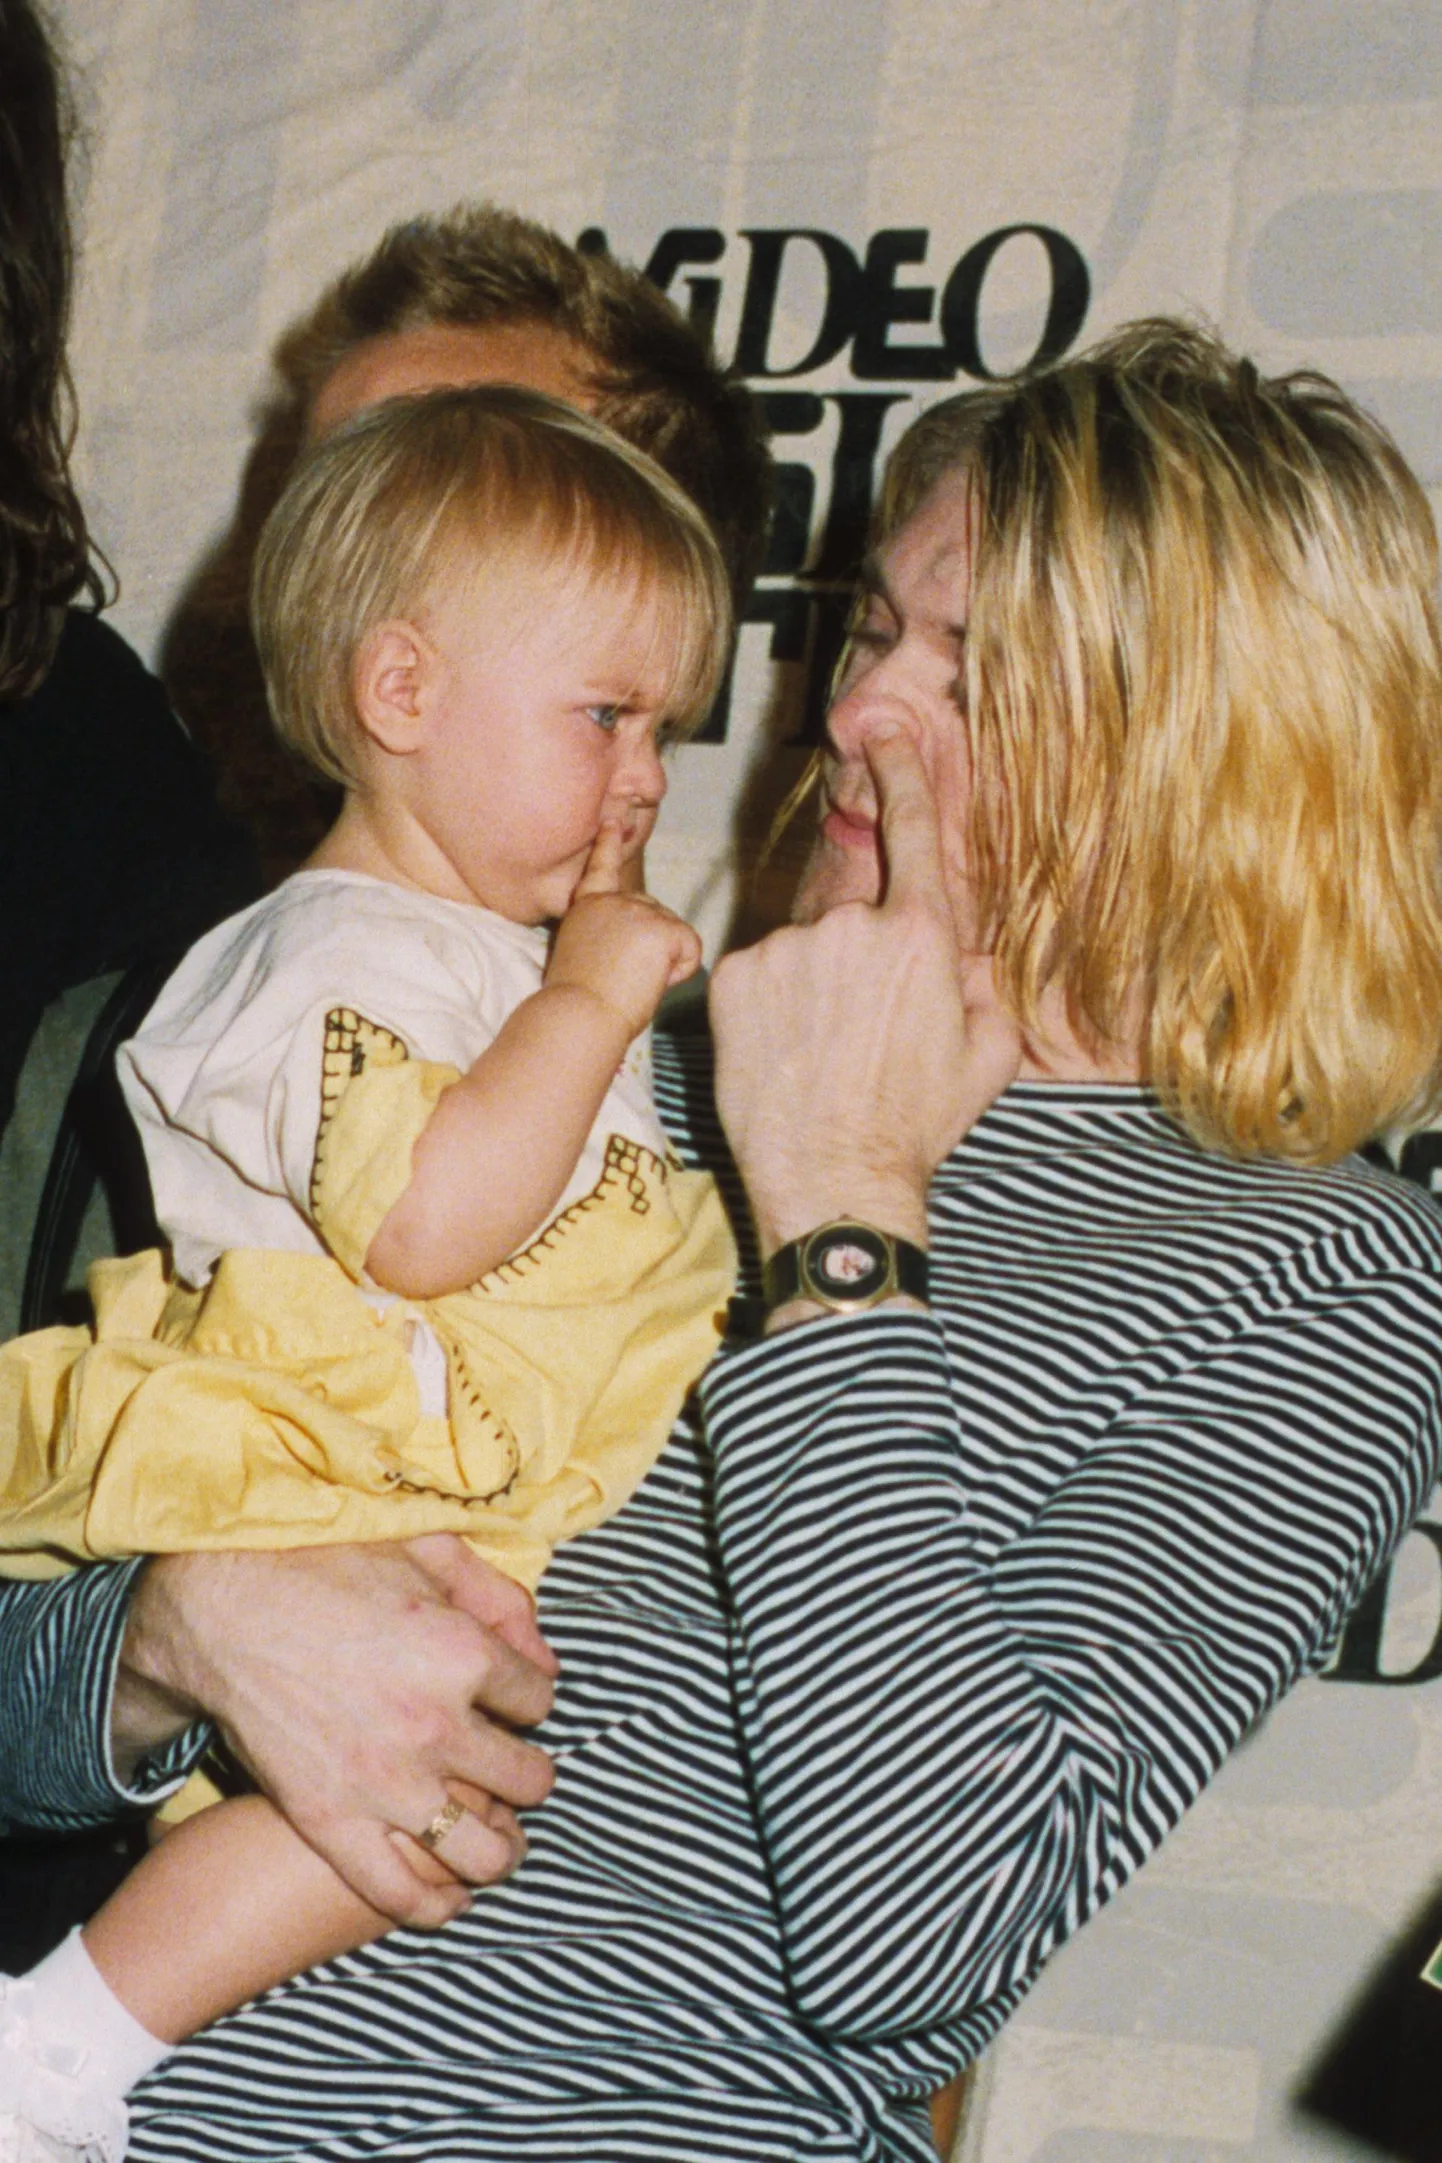 Muusik Kurt Cobain tütrega ninanokkimist arutamas. Nina nokkimine on praegu ohtlik harjumus.